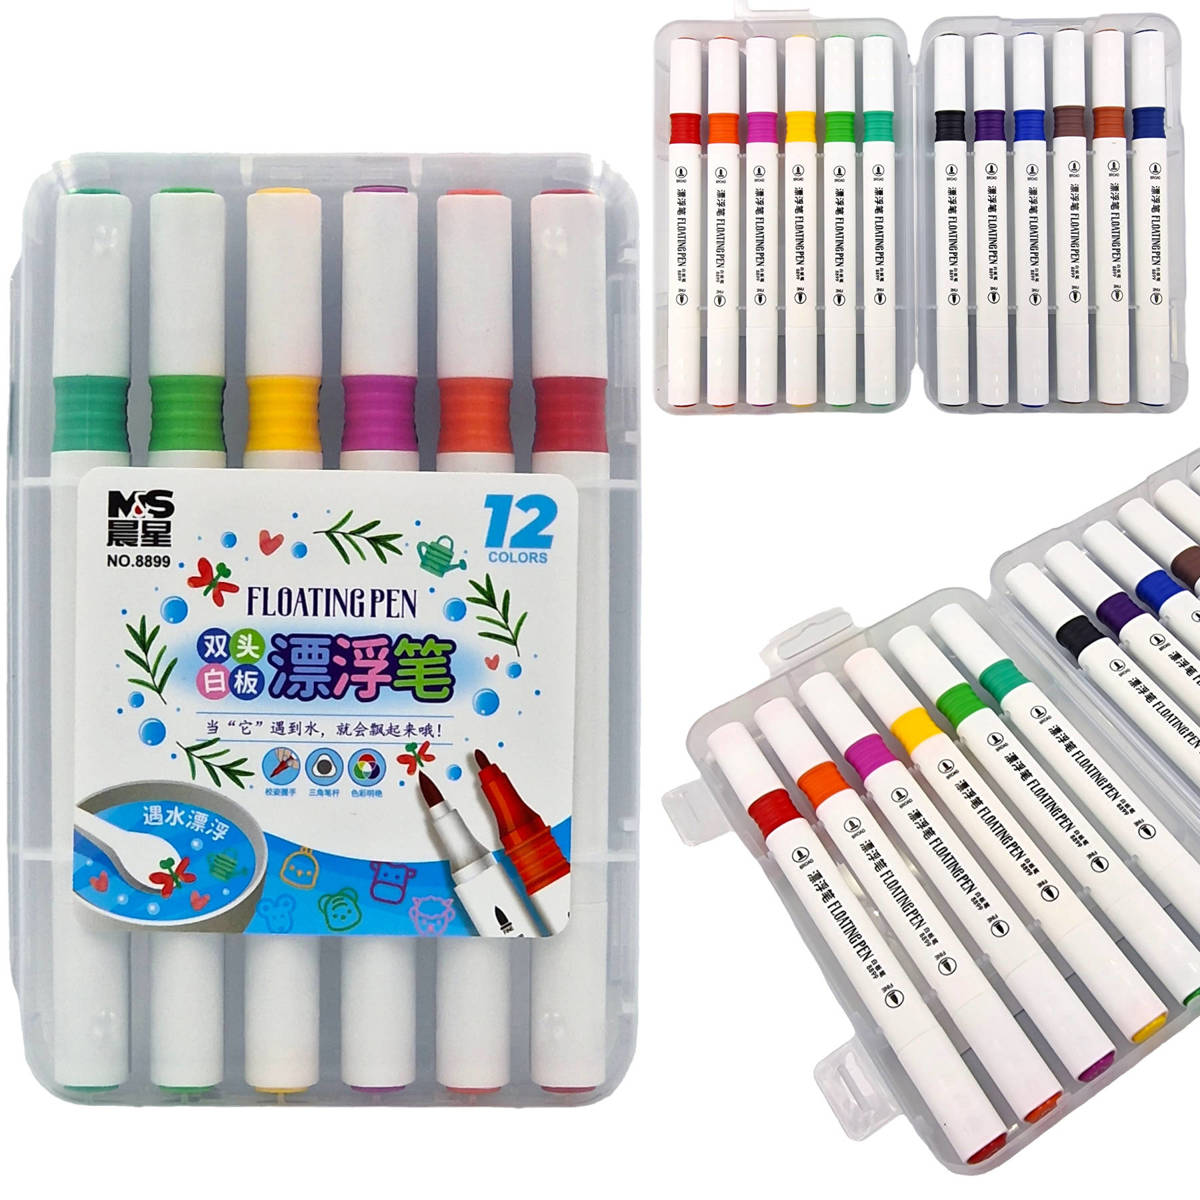 Flamastry do rysowania po wodzie- zestaw zawiera 12 sztuk magicznych markerów w różnych kolorach